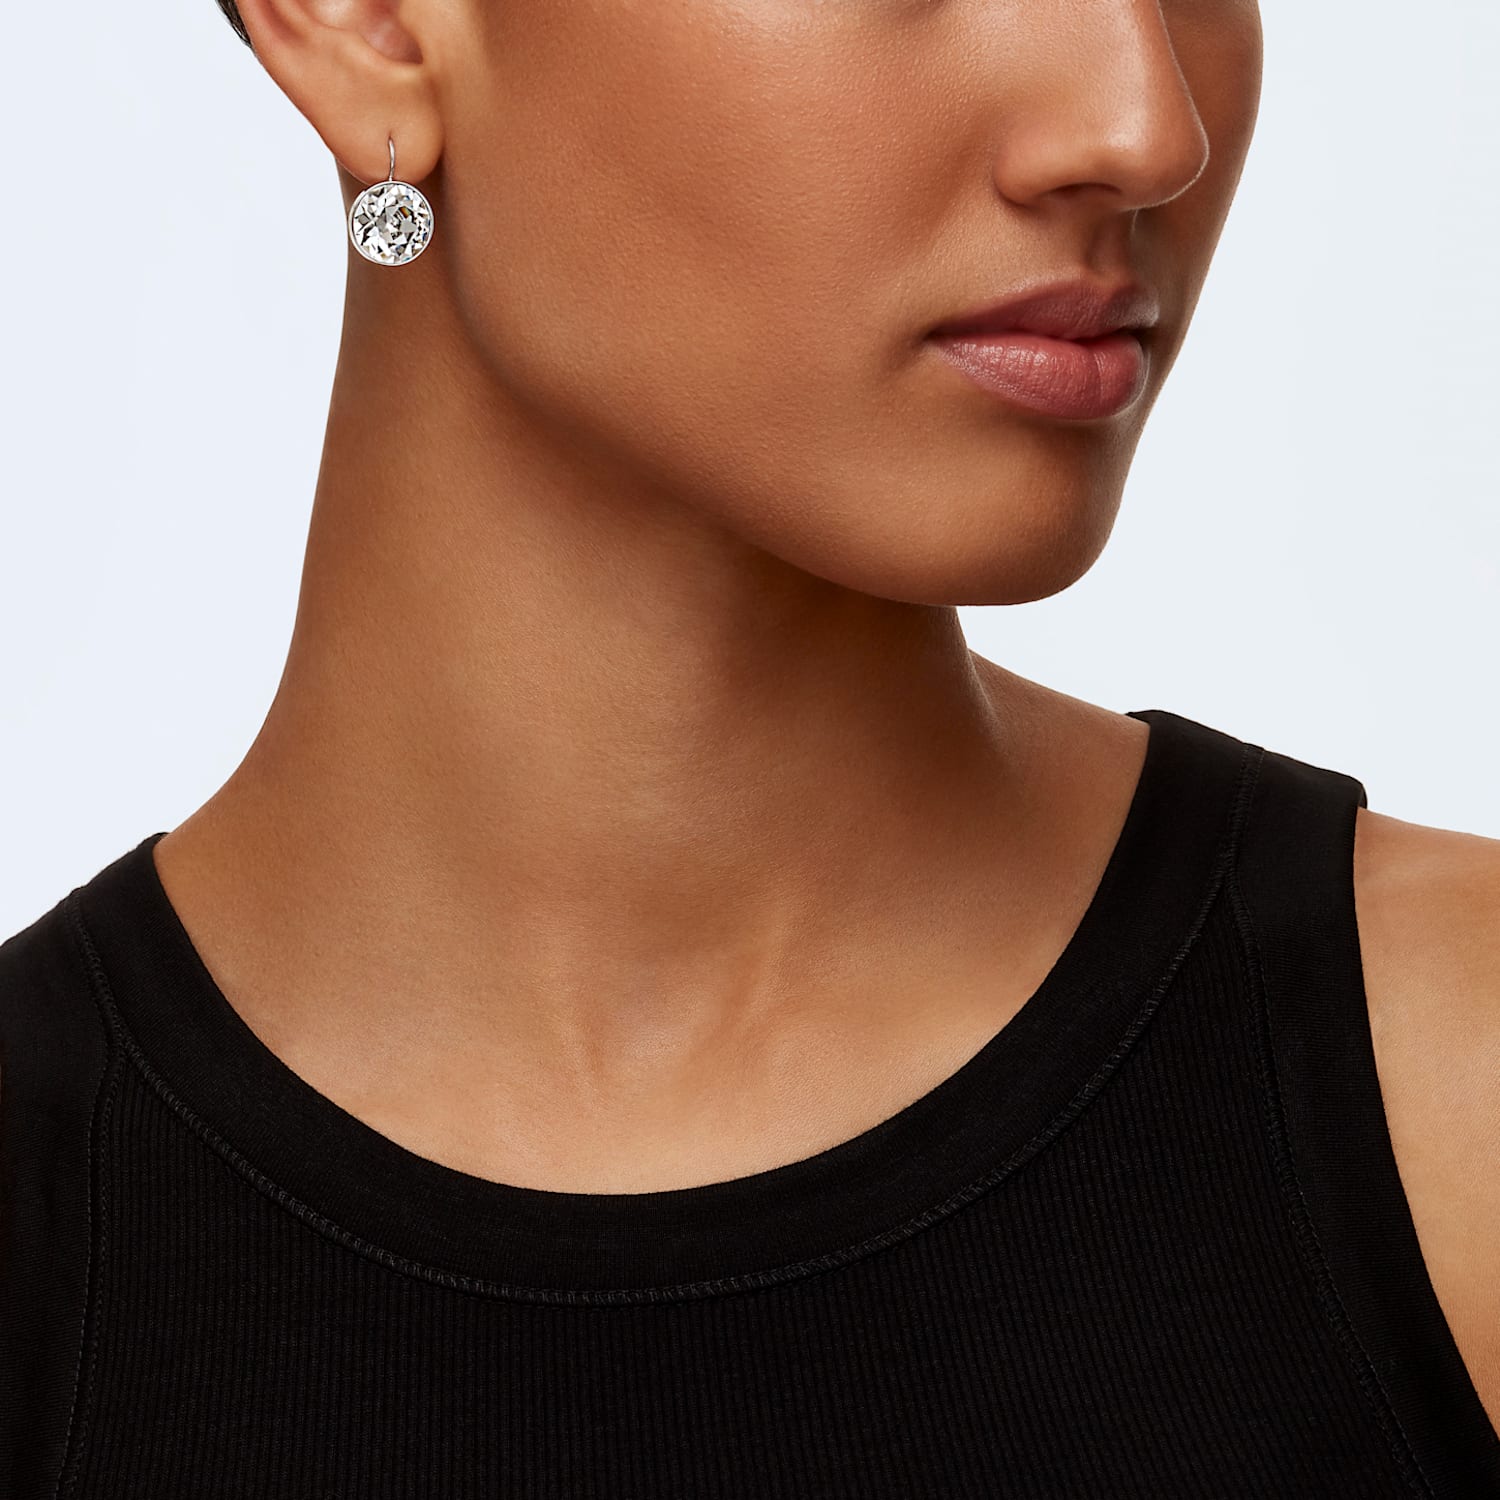 値頃 海外輸入 安心の国内発送 5205010 Crystal 1 in looks 2 Earrings 